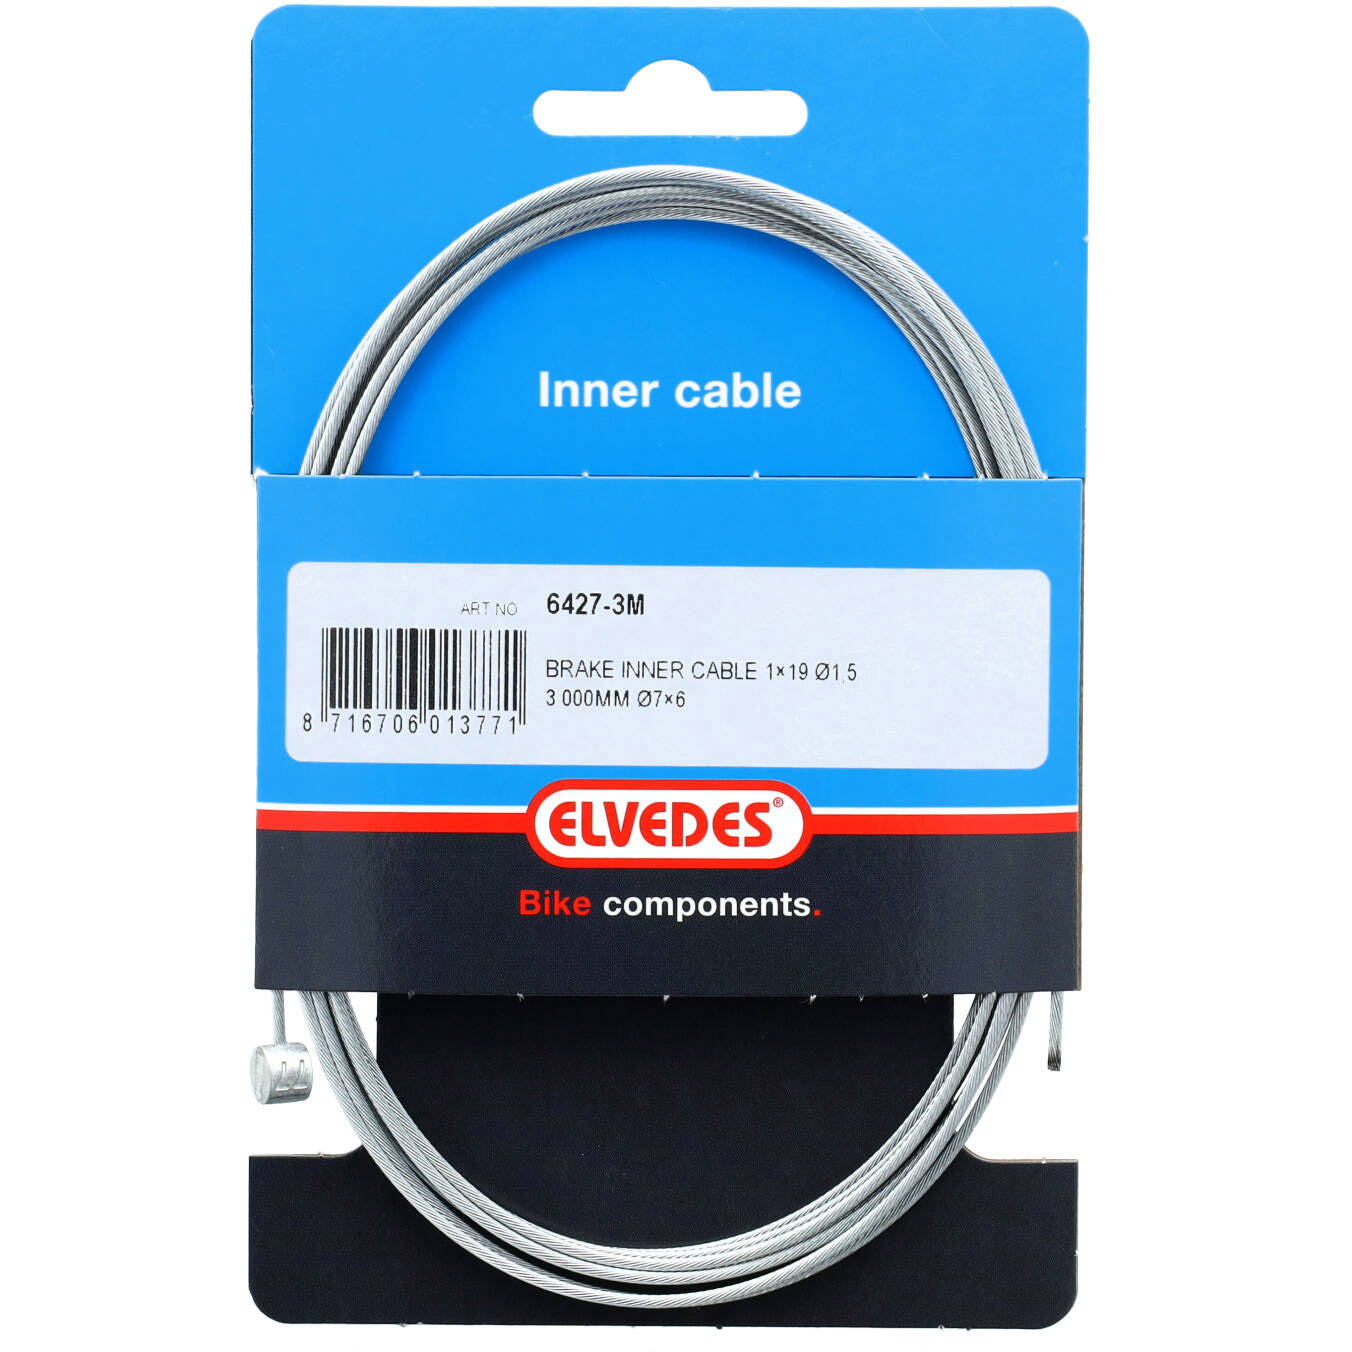 Elvedes Brake Cable interno de 3000 mm galvanizado Ø1.5 mm T-Tiple